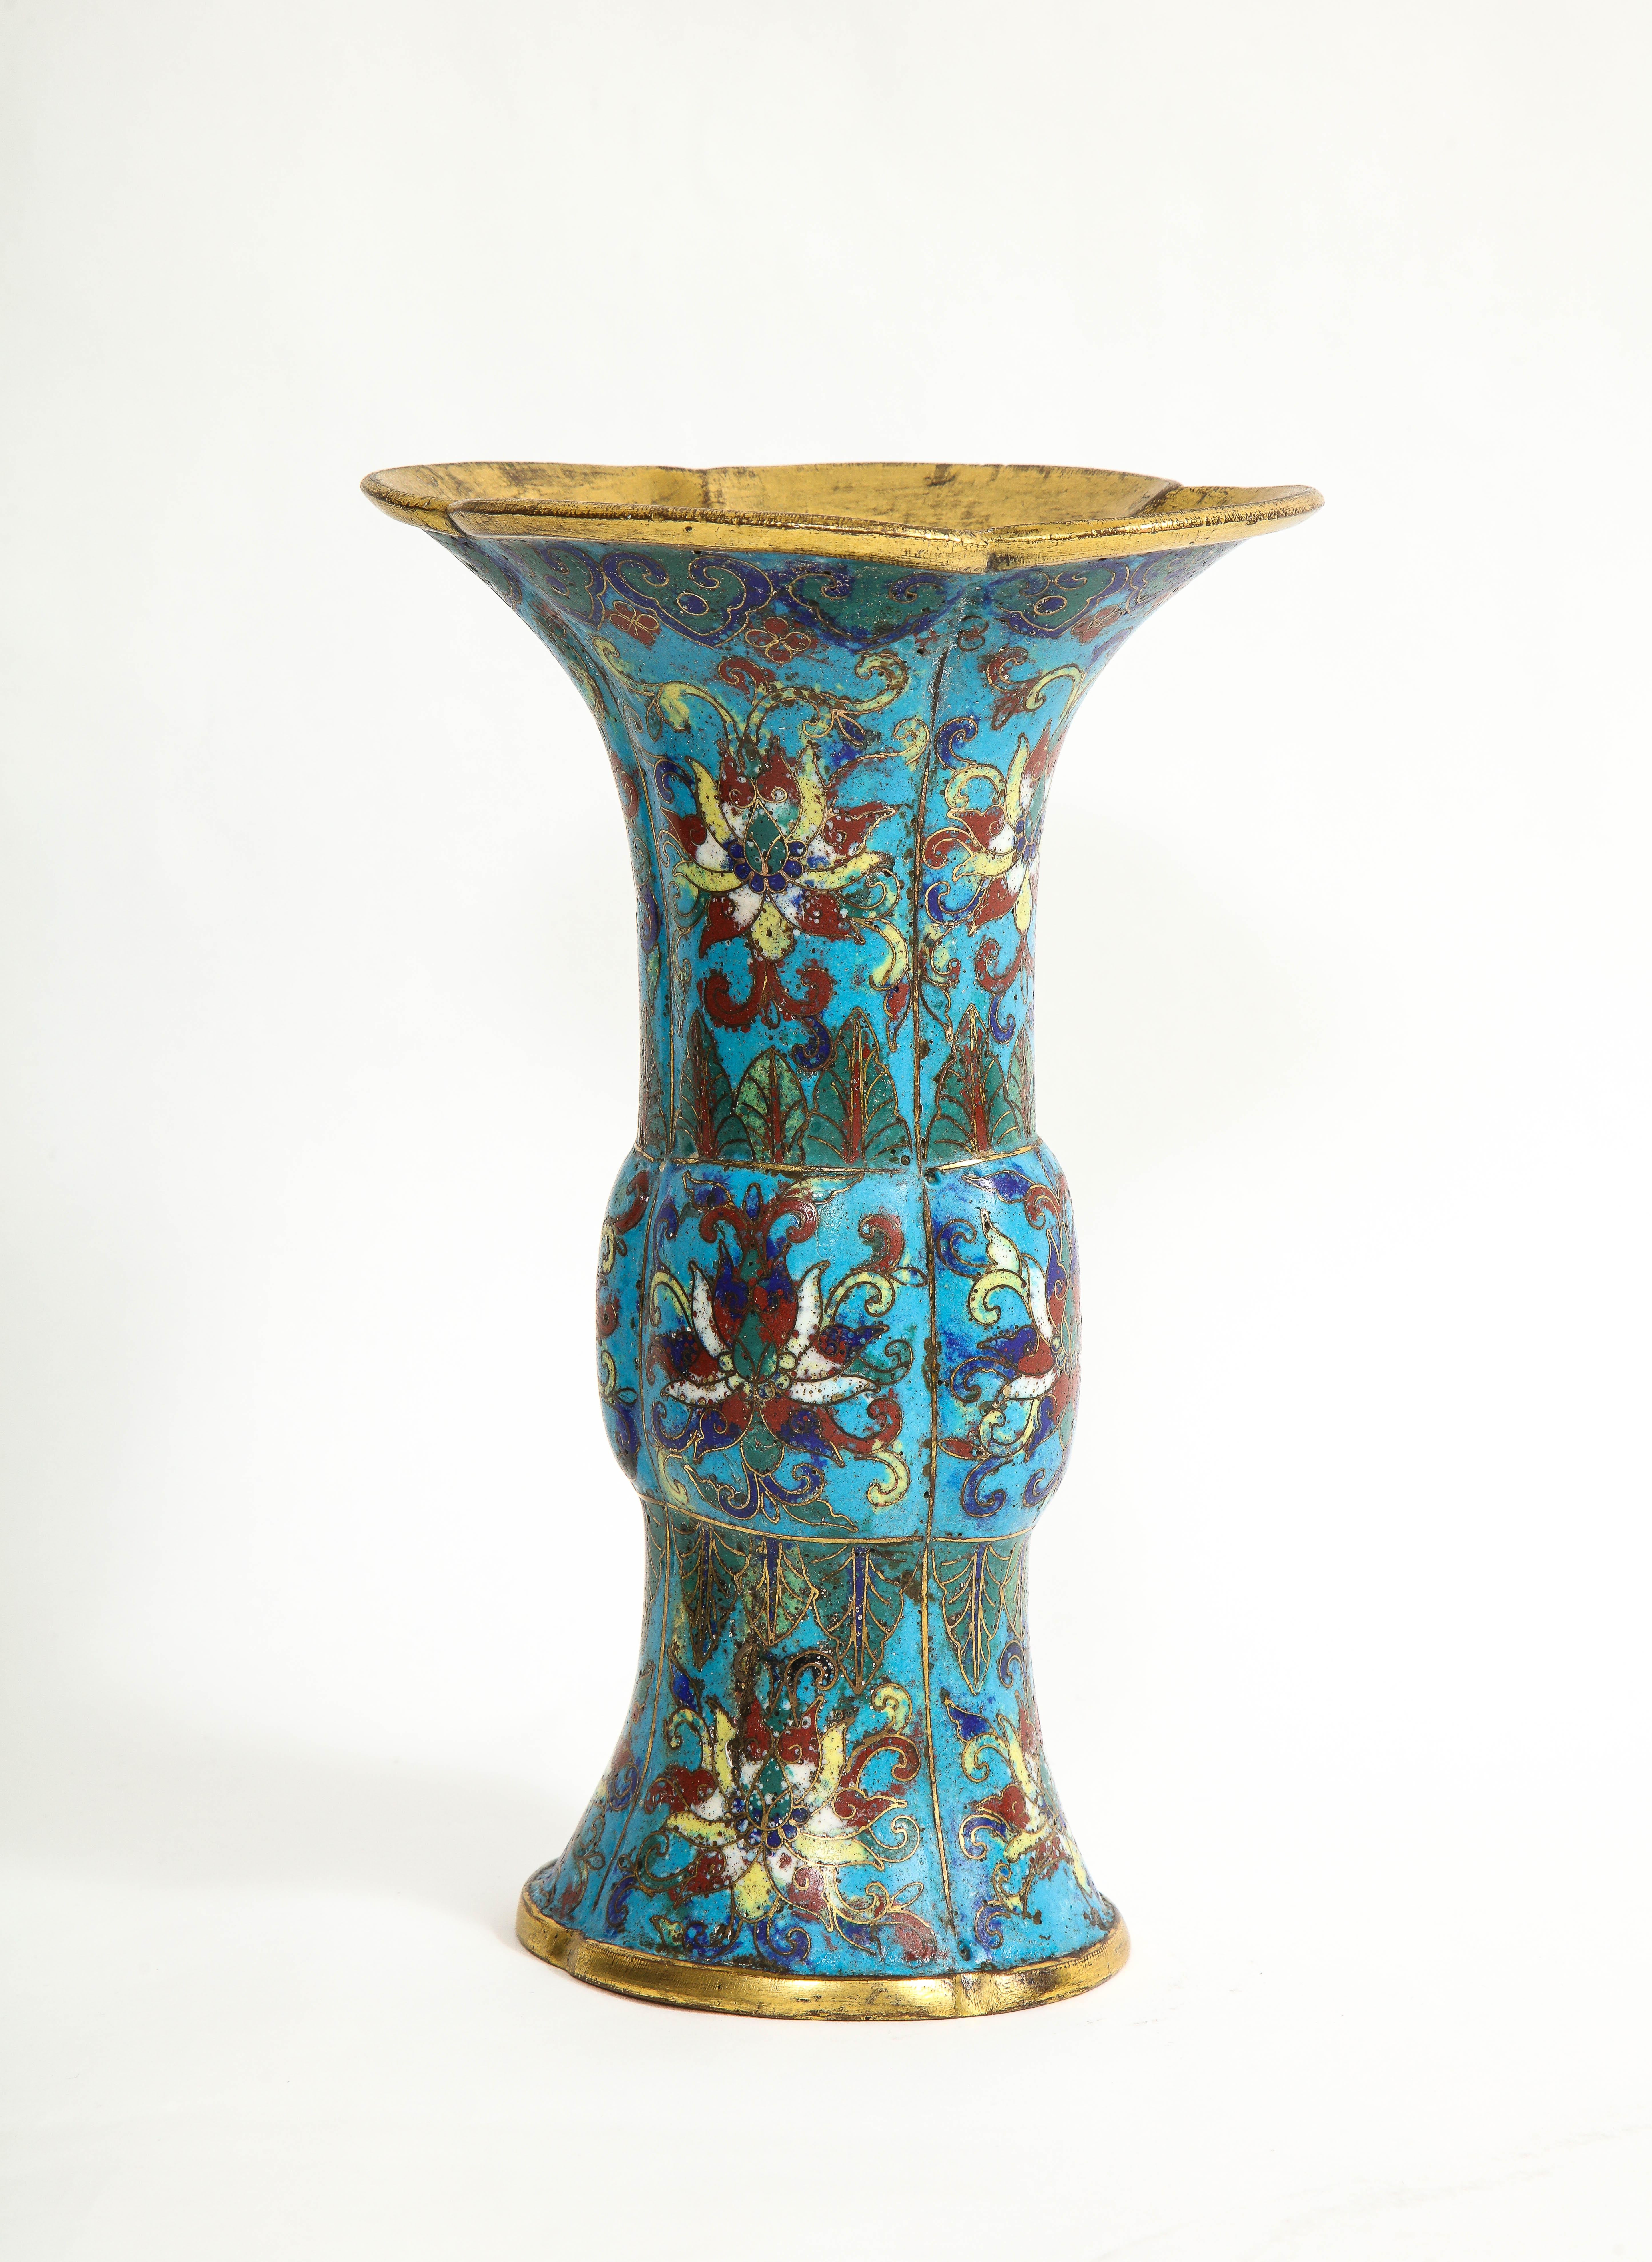 Cloissoné Antique Chinese Cloisonné Enamel Gu Form Vase, 17th/18th Century, Kangxi Period For Sale